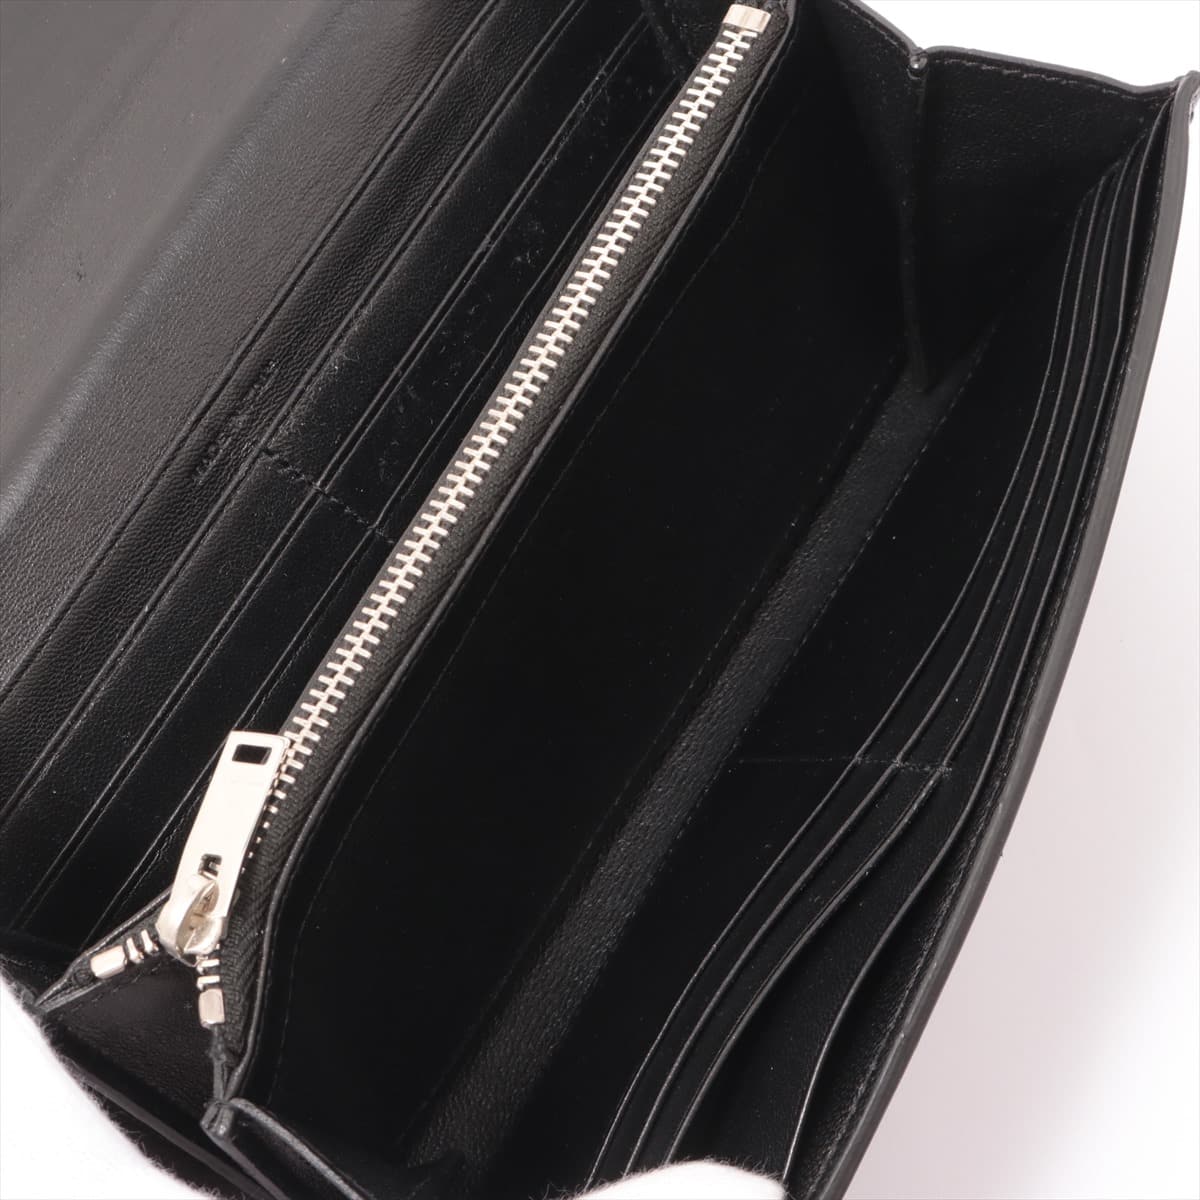 Saint Laurent Paris Leather Wallet Black